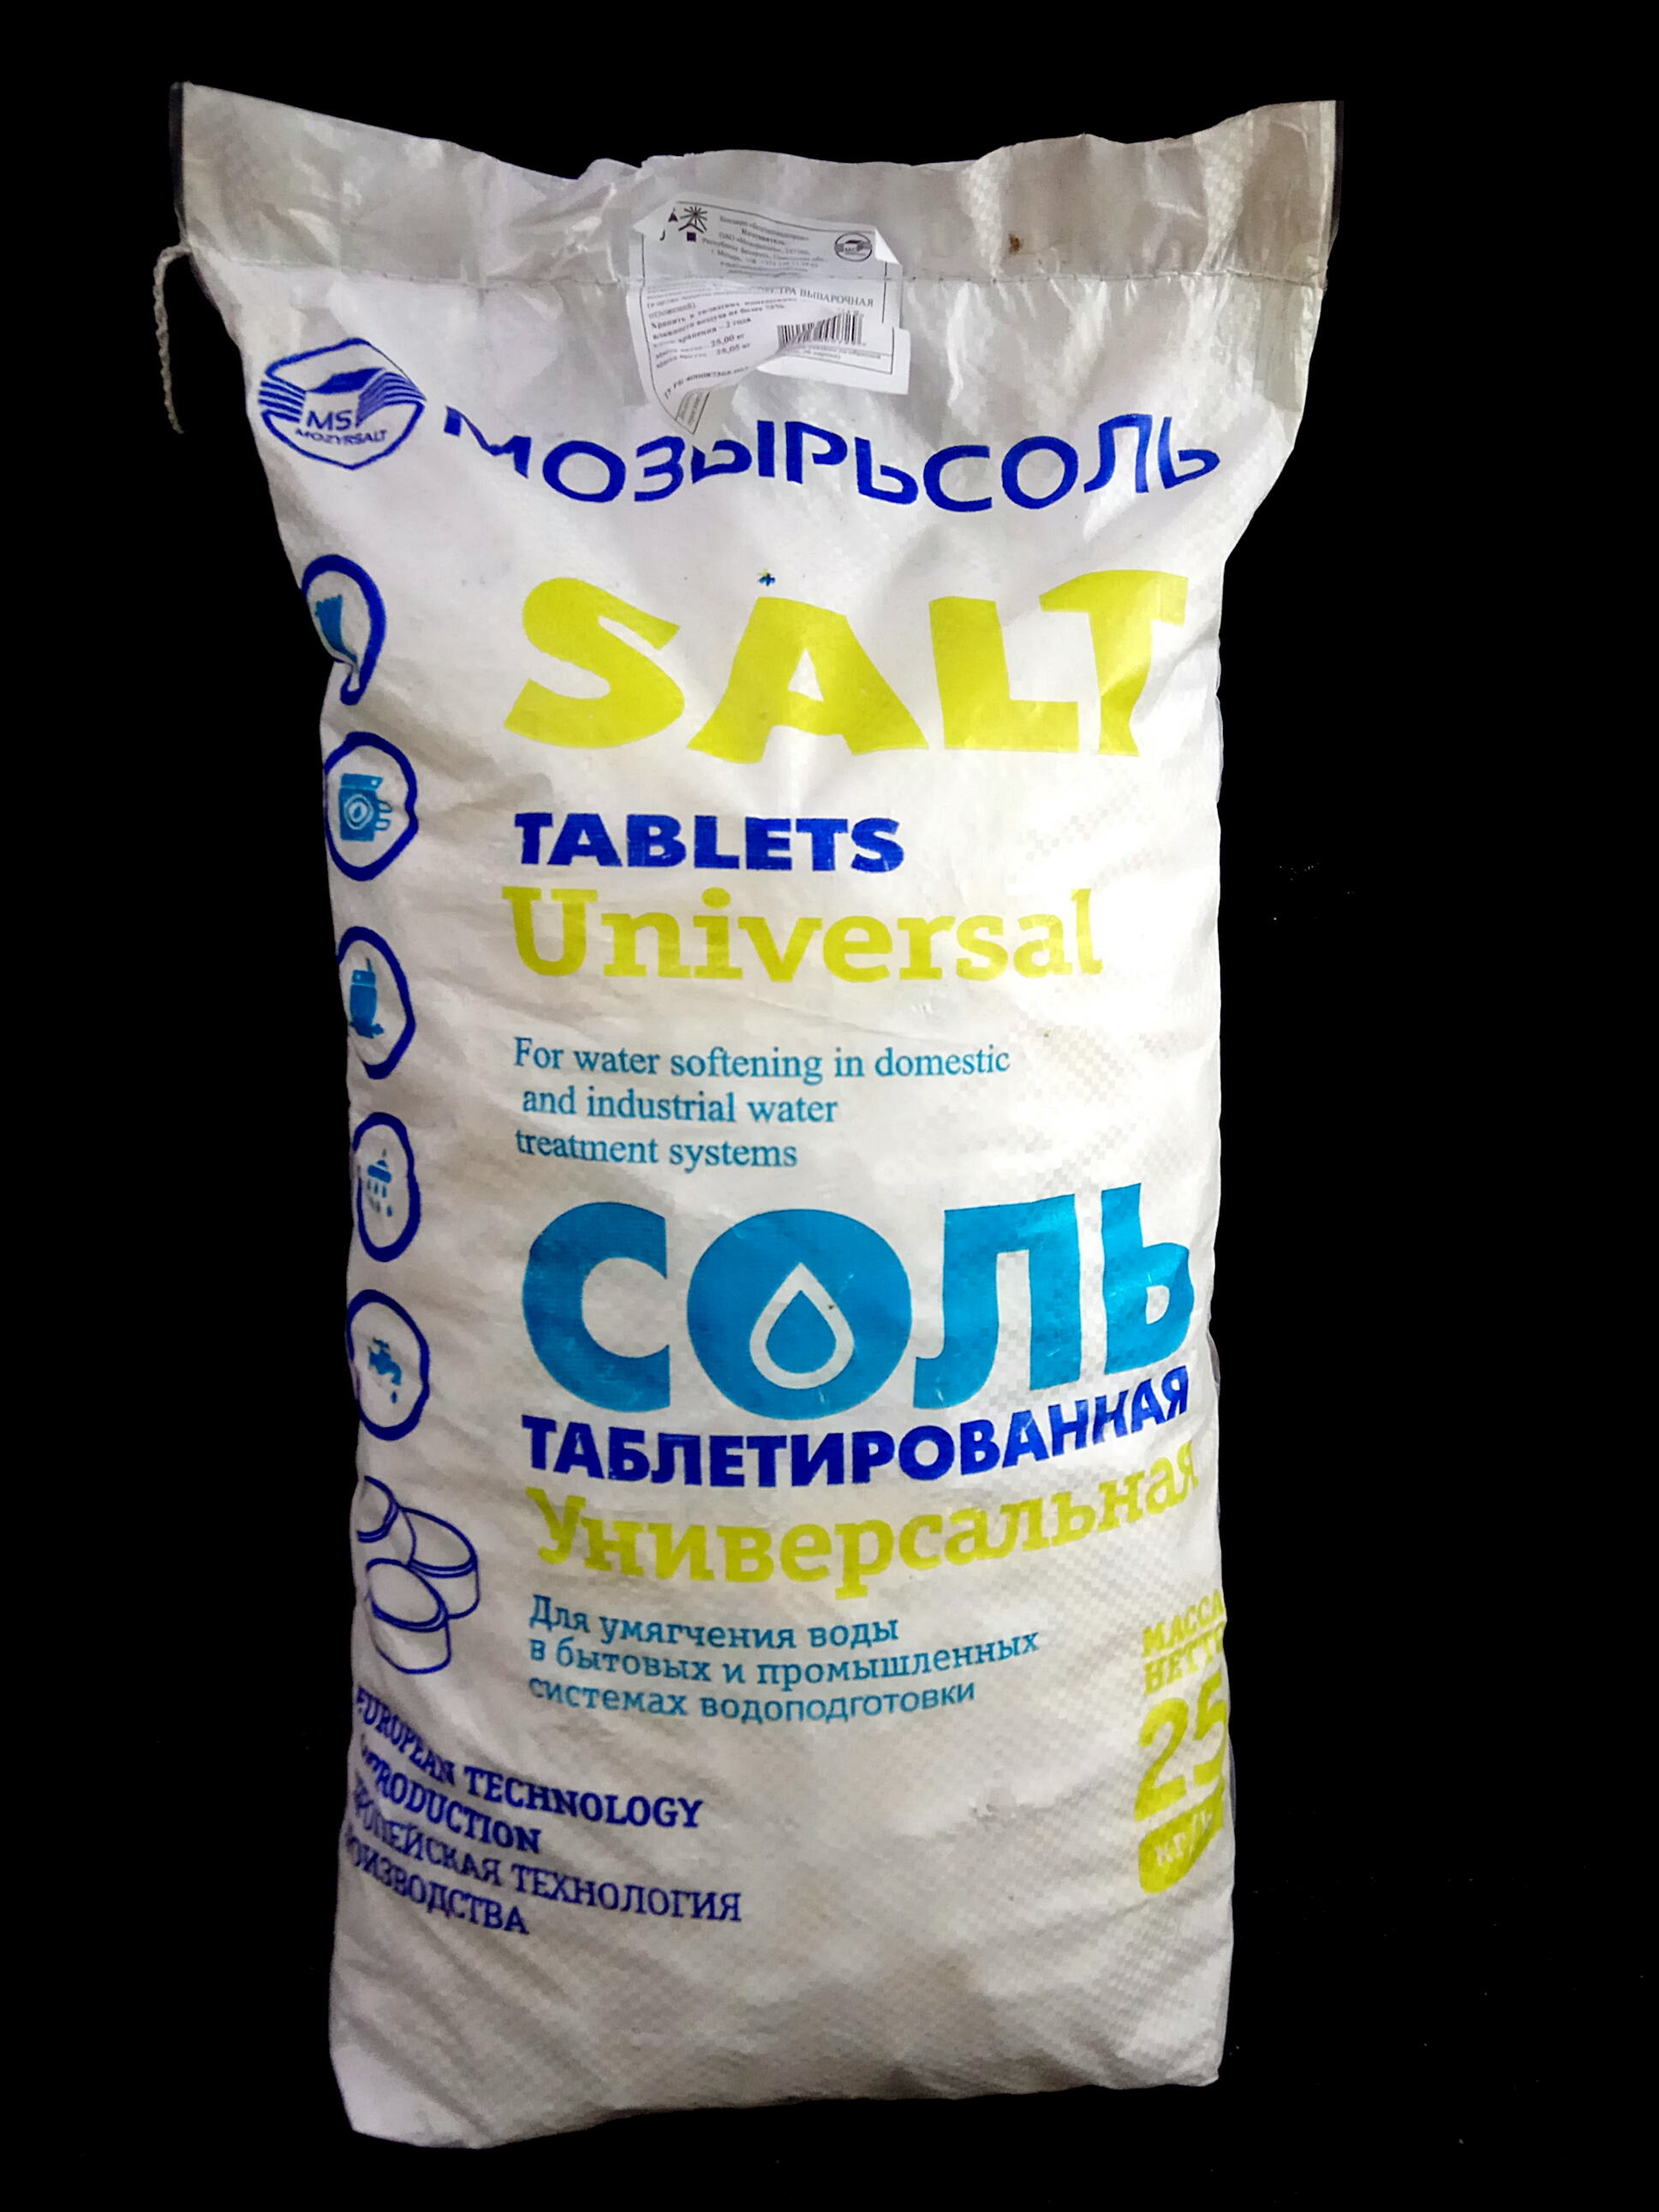 соль поваренная выварочная таблетированная универсальная купить